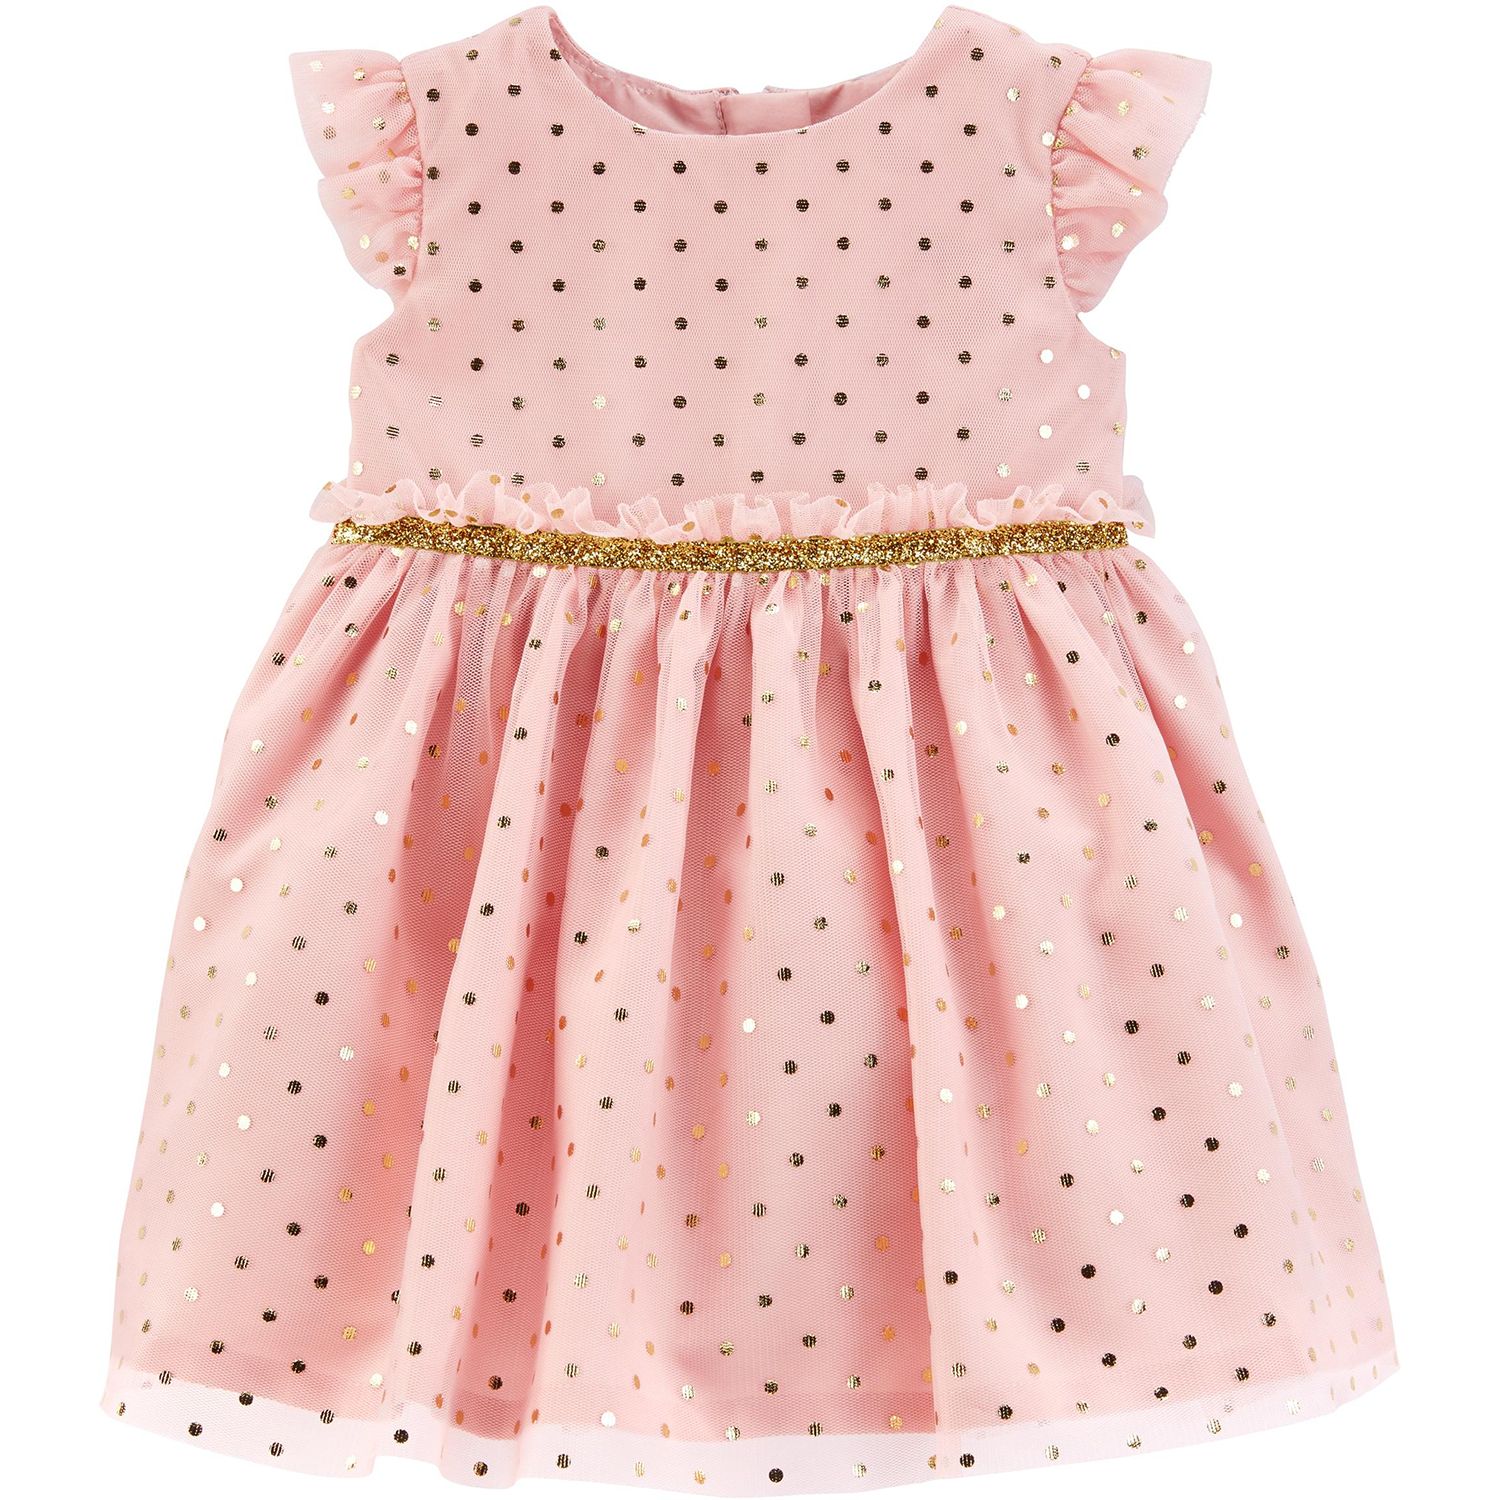 polka dot dress for little girl